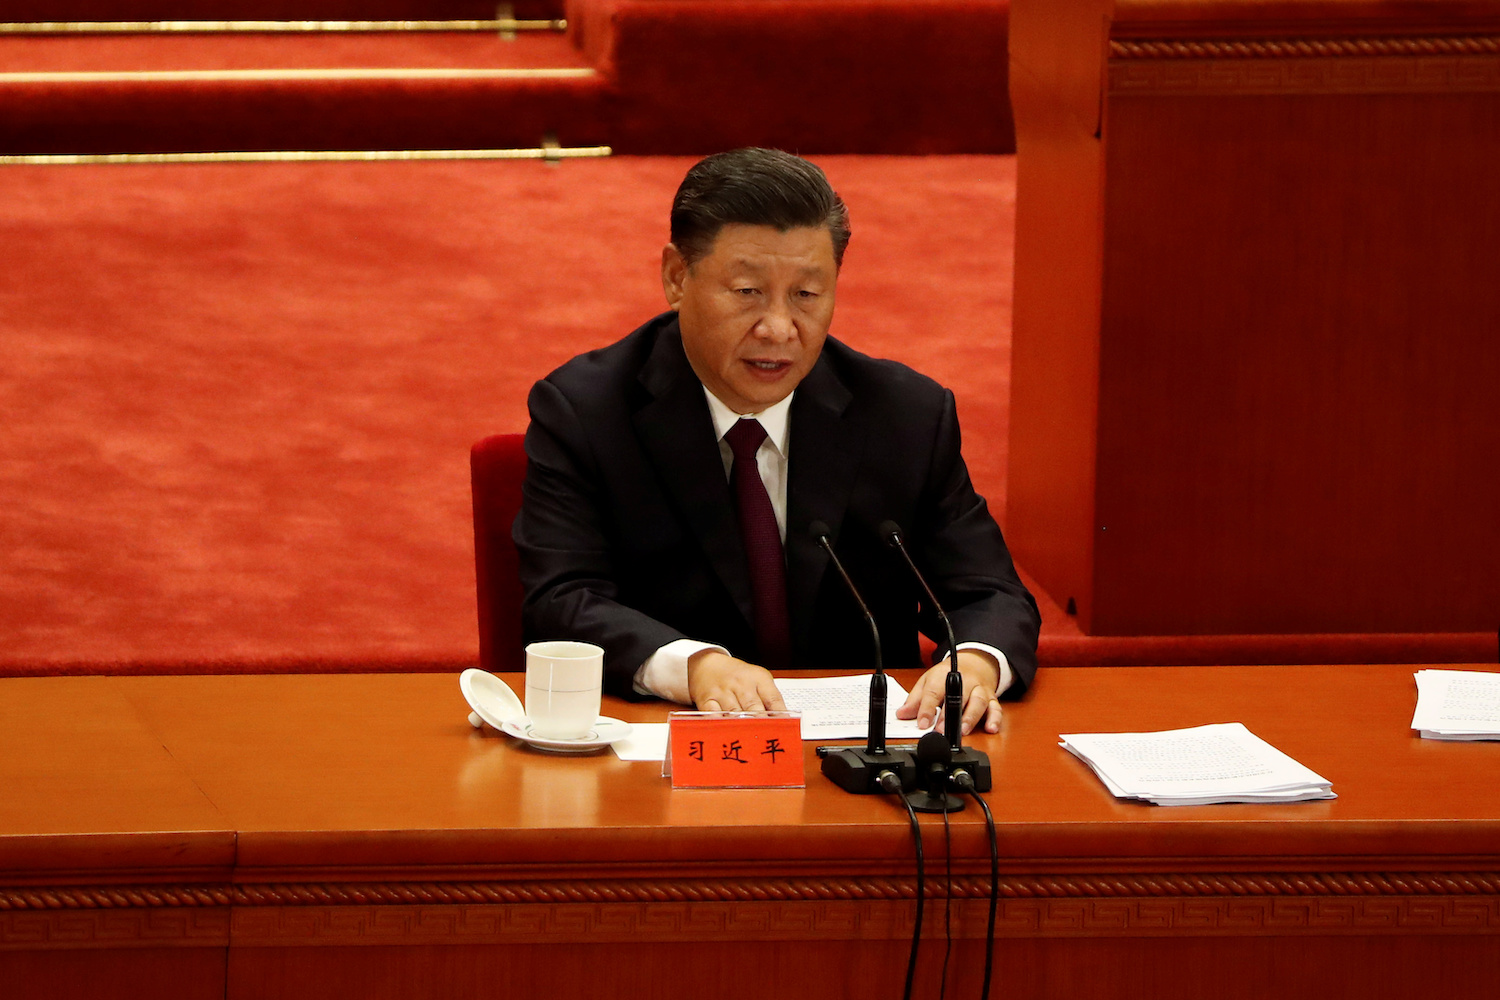 China’s leadership clarifies upcoming reforms